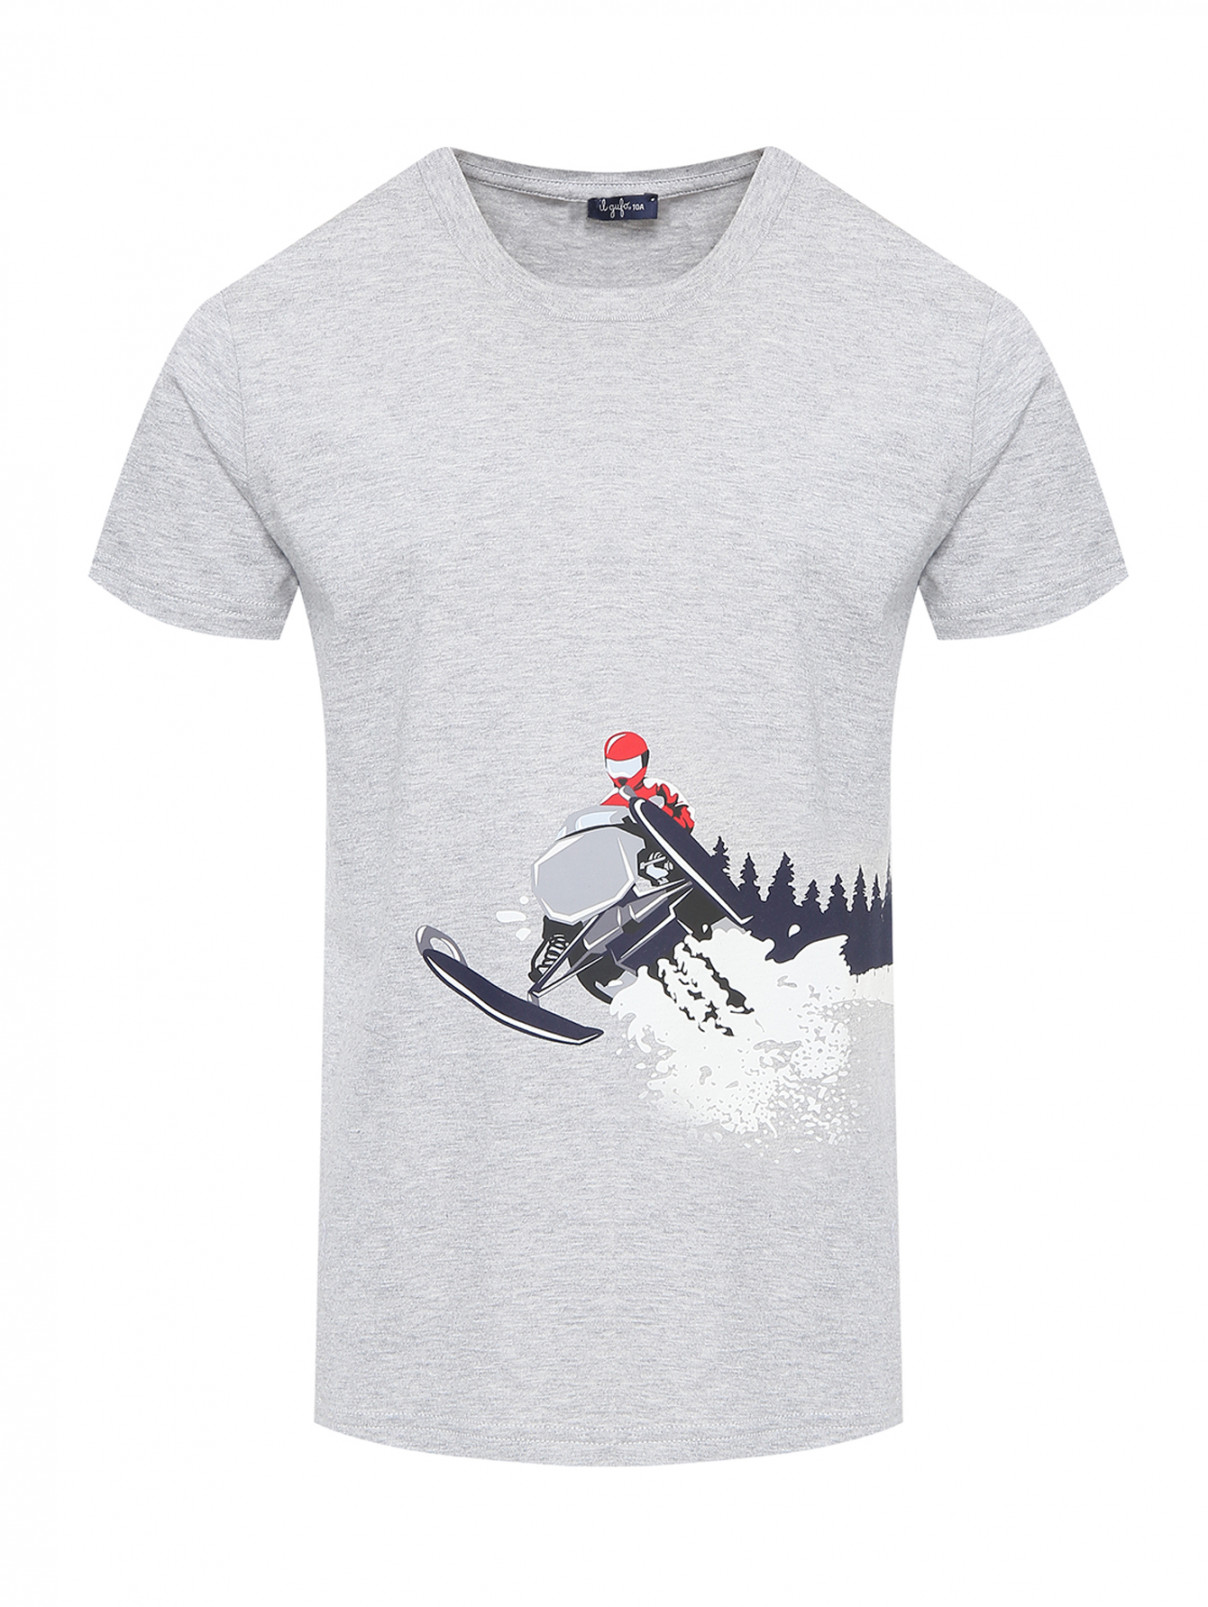 Хлопковая футболка с принтом Il Gufo  –  Общий вид  – Цвет:  Серый